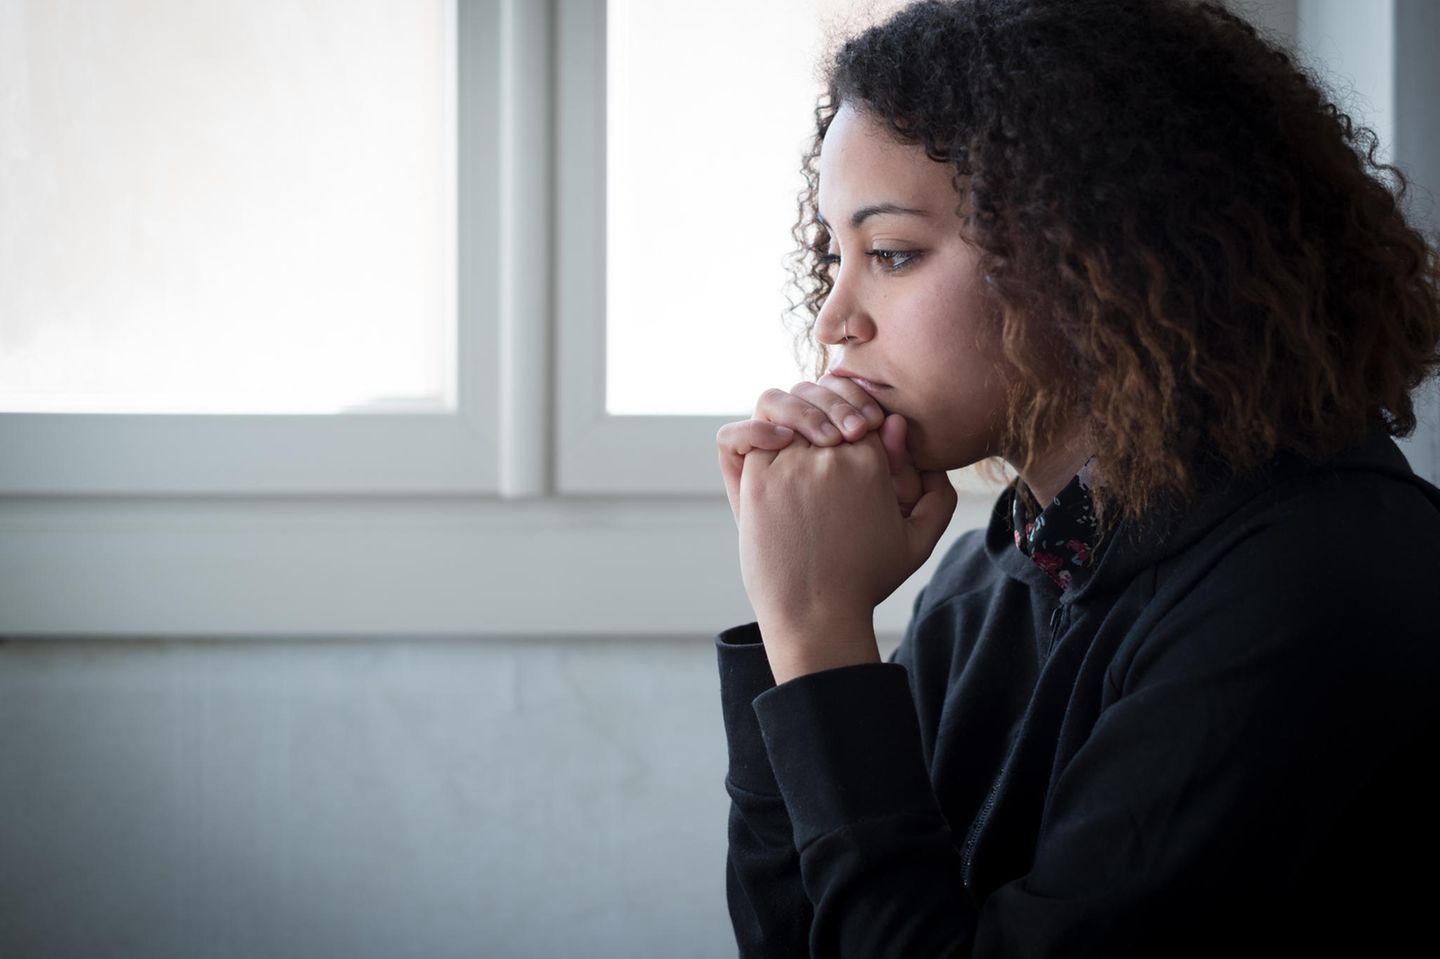 Mobbing in der Schule: Eine Teenagerin mit dunklem Pulli und dunklen lockigen Haaren sitzt traurig neben einem Fenster.